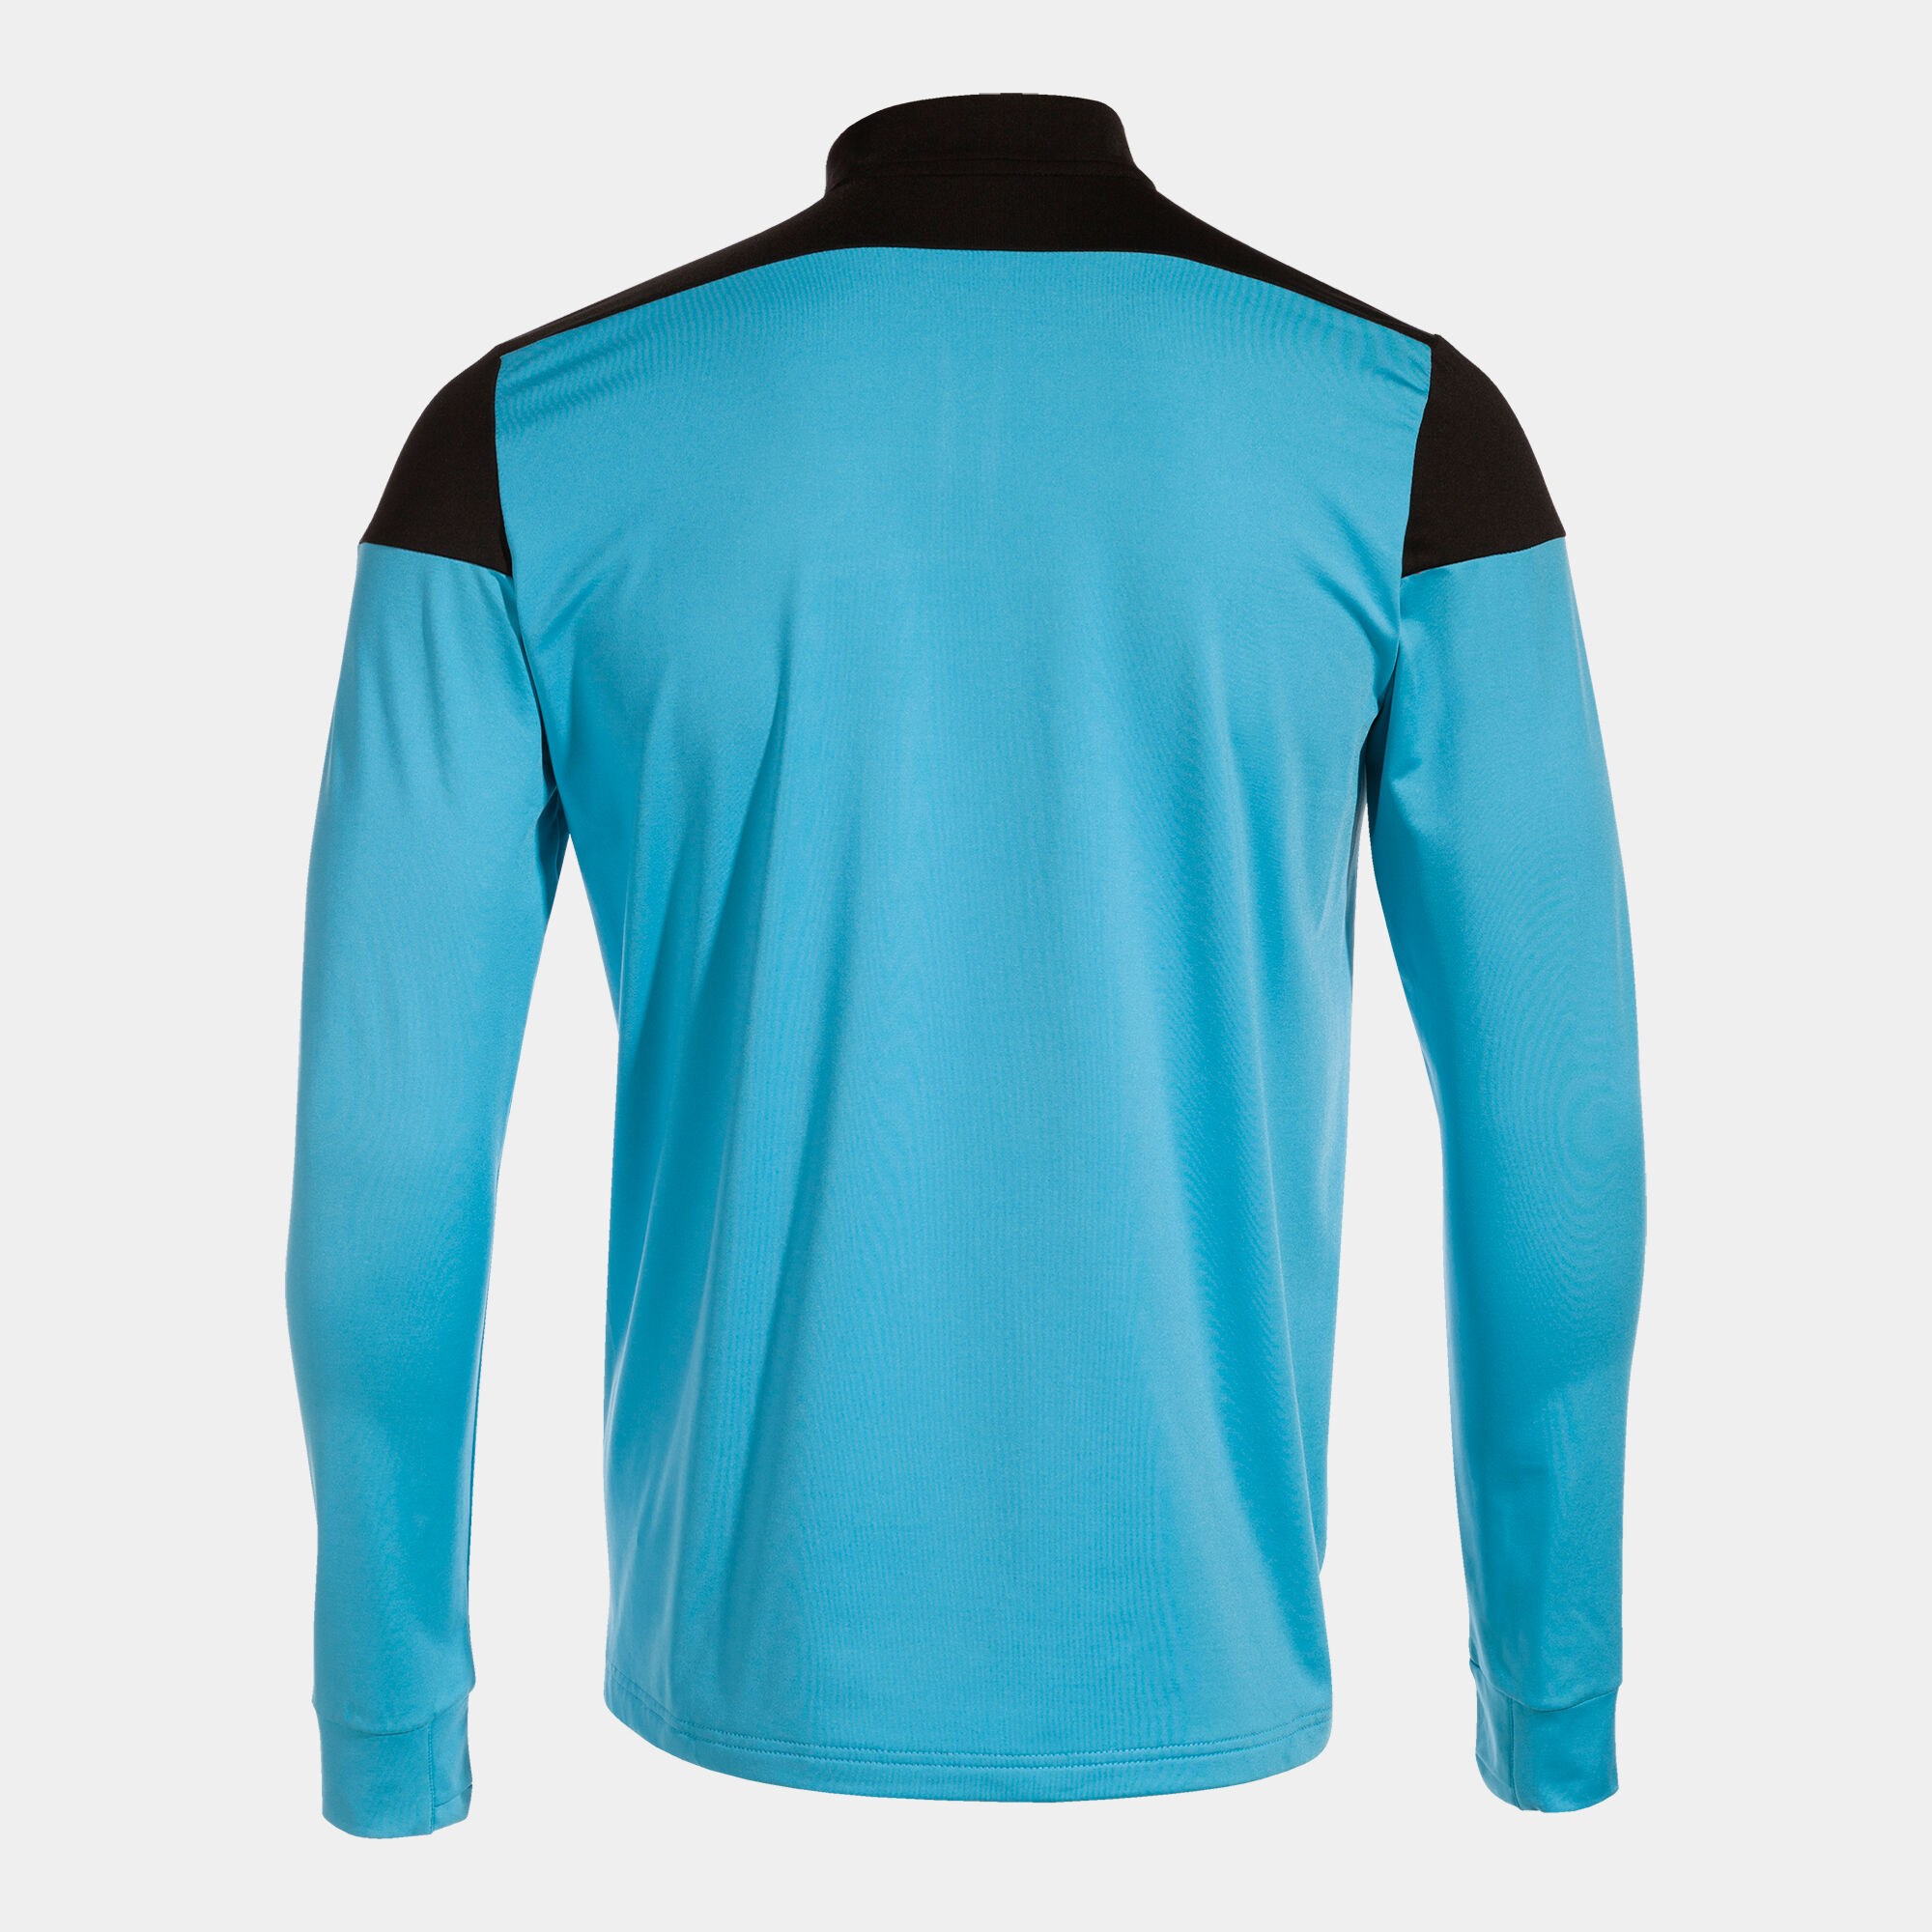 Sweat-shirt homme Elite X turquoise fluo noir